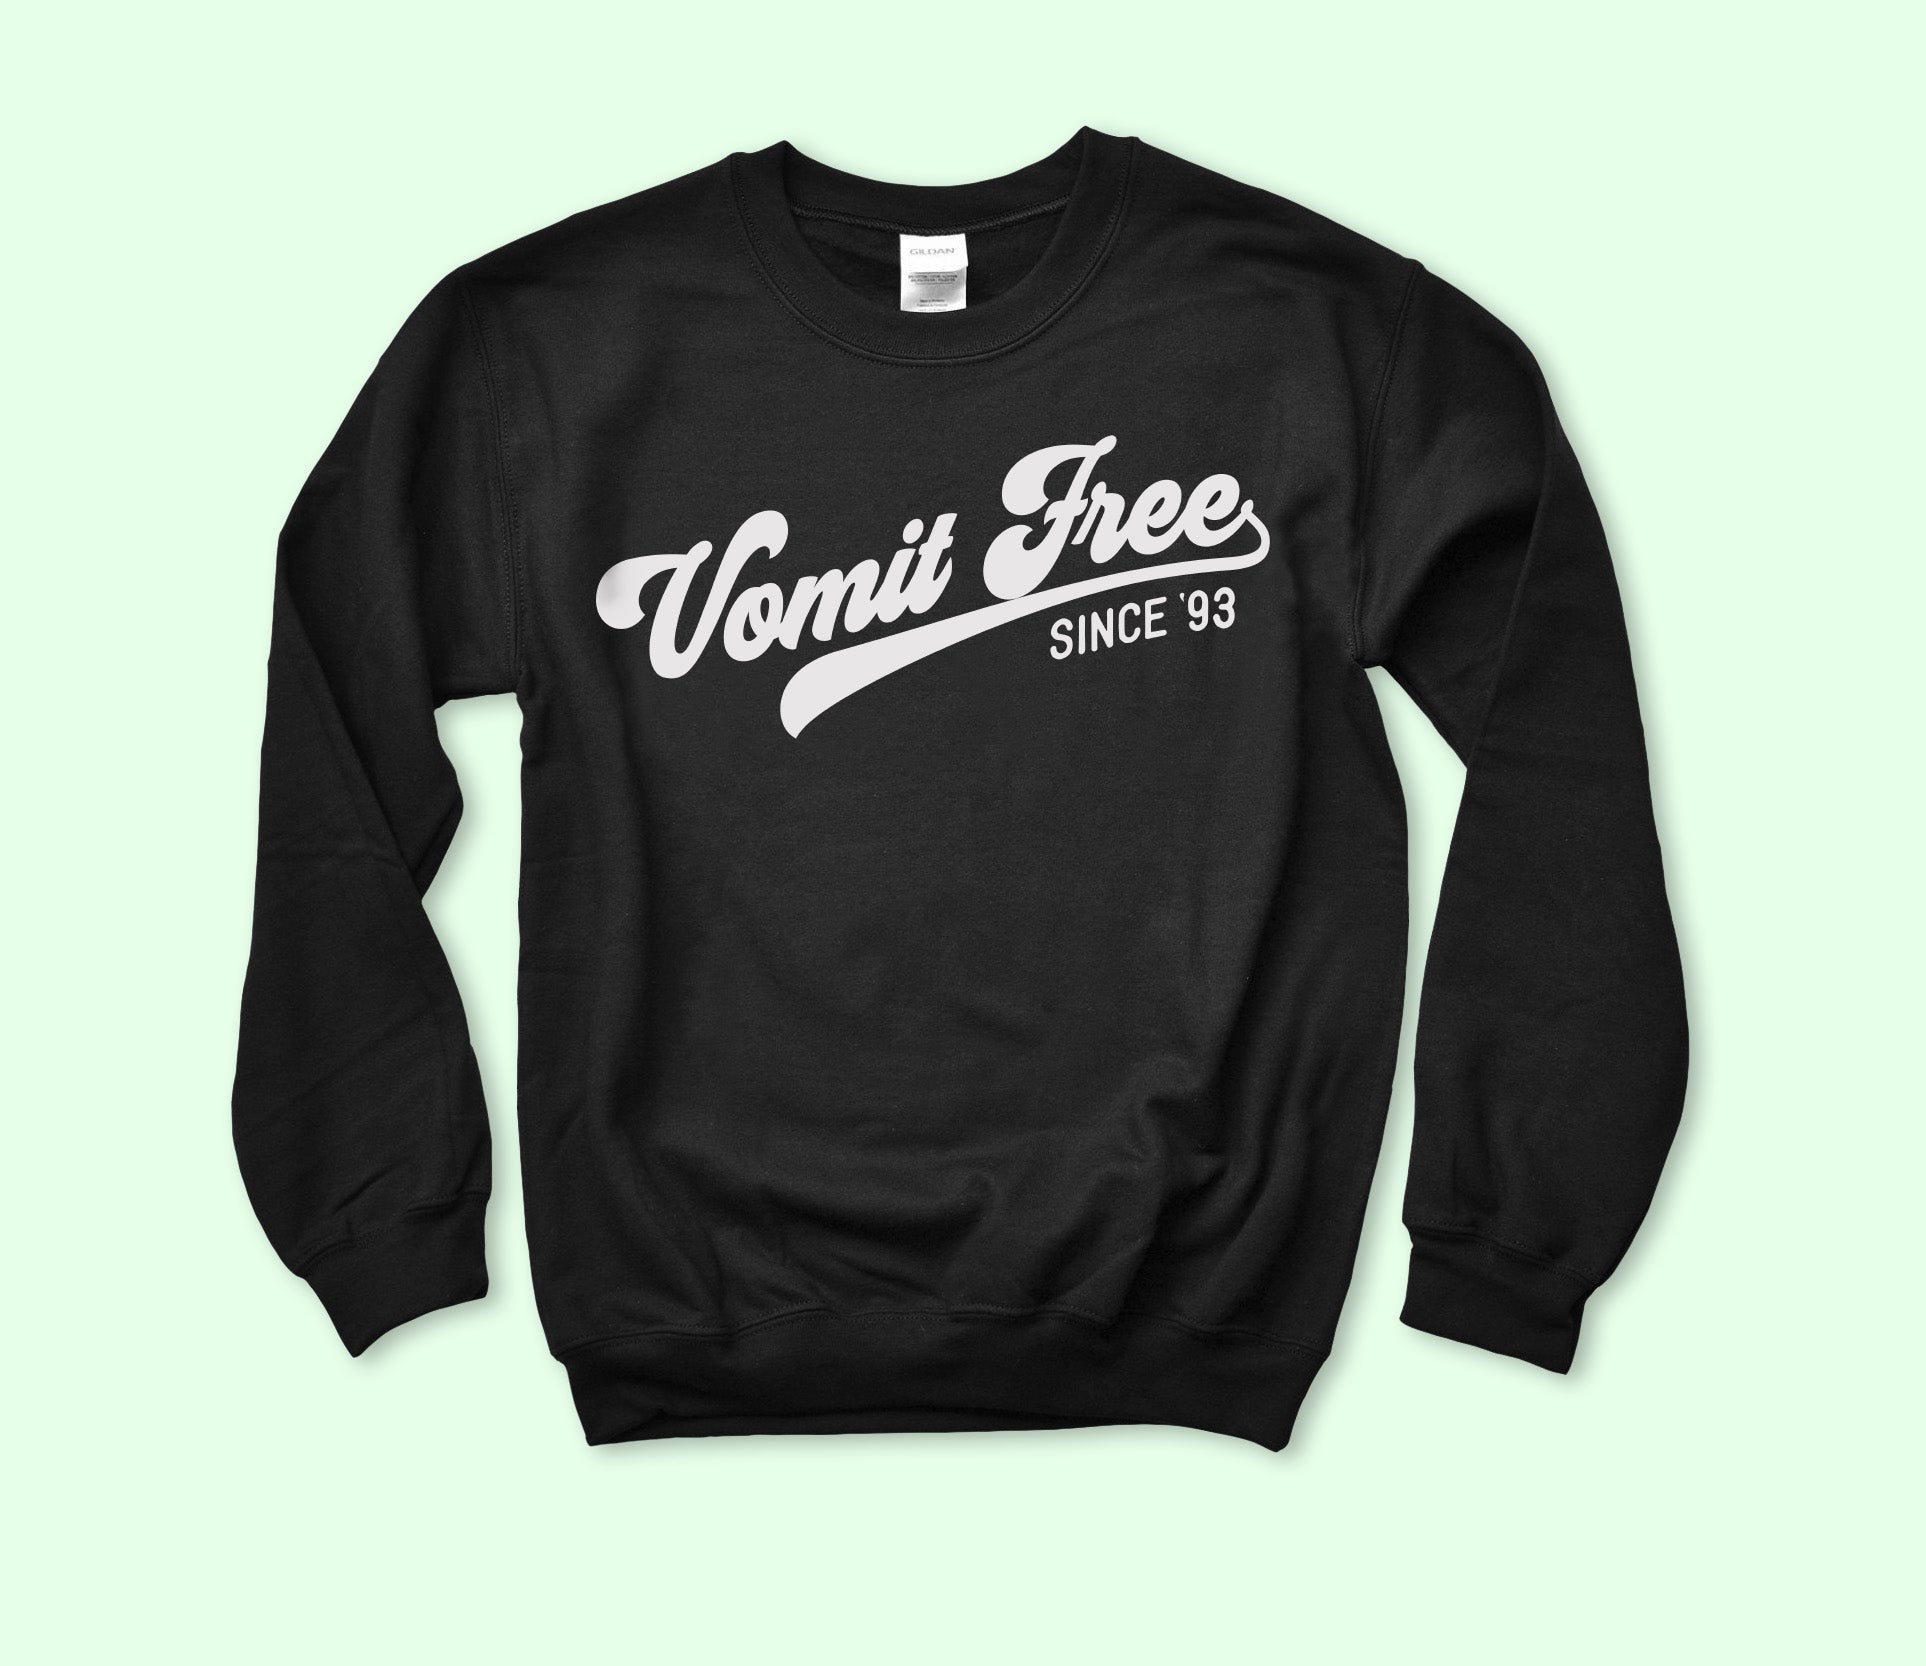 Vomit Free Since 93 Sweatshirt